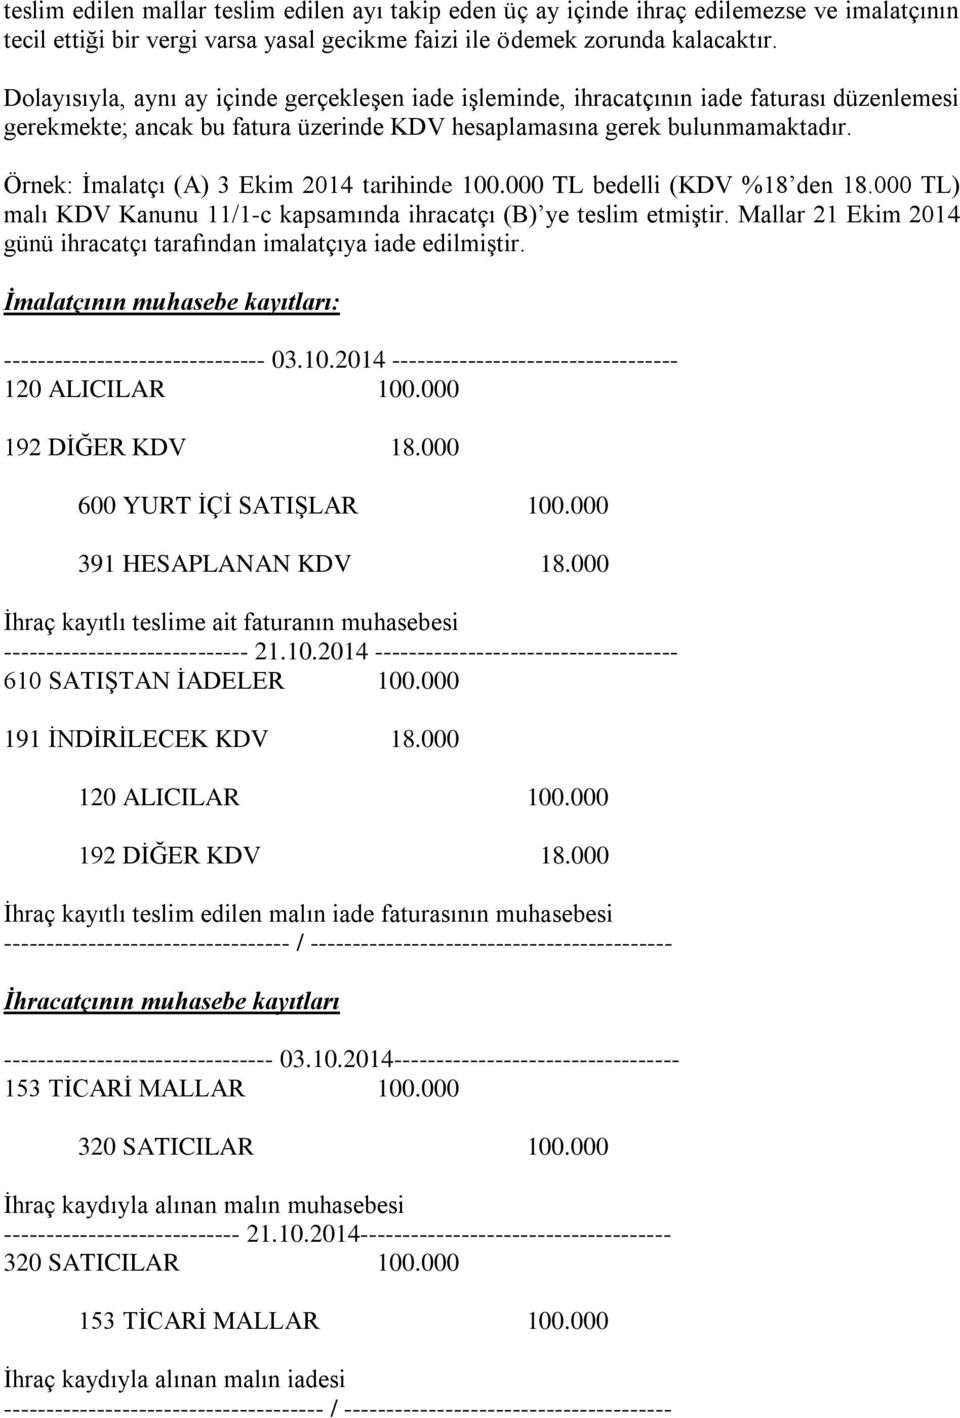 Örnek: İmalatçı (A) 3 Ekim 2014 tarihinde 100.000 TL bedelli (KDV %18 den 18.000 TL) malı KDV Kanunu 11/1-c kapsamında ihracatçı (B) ye teslim etmiştir.